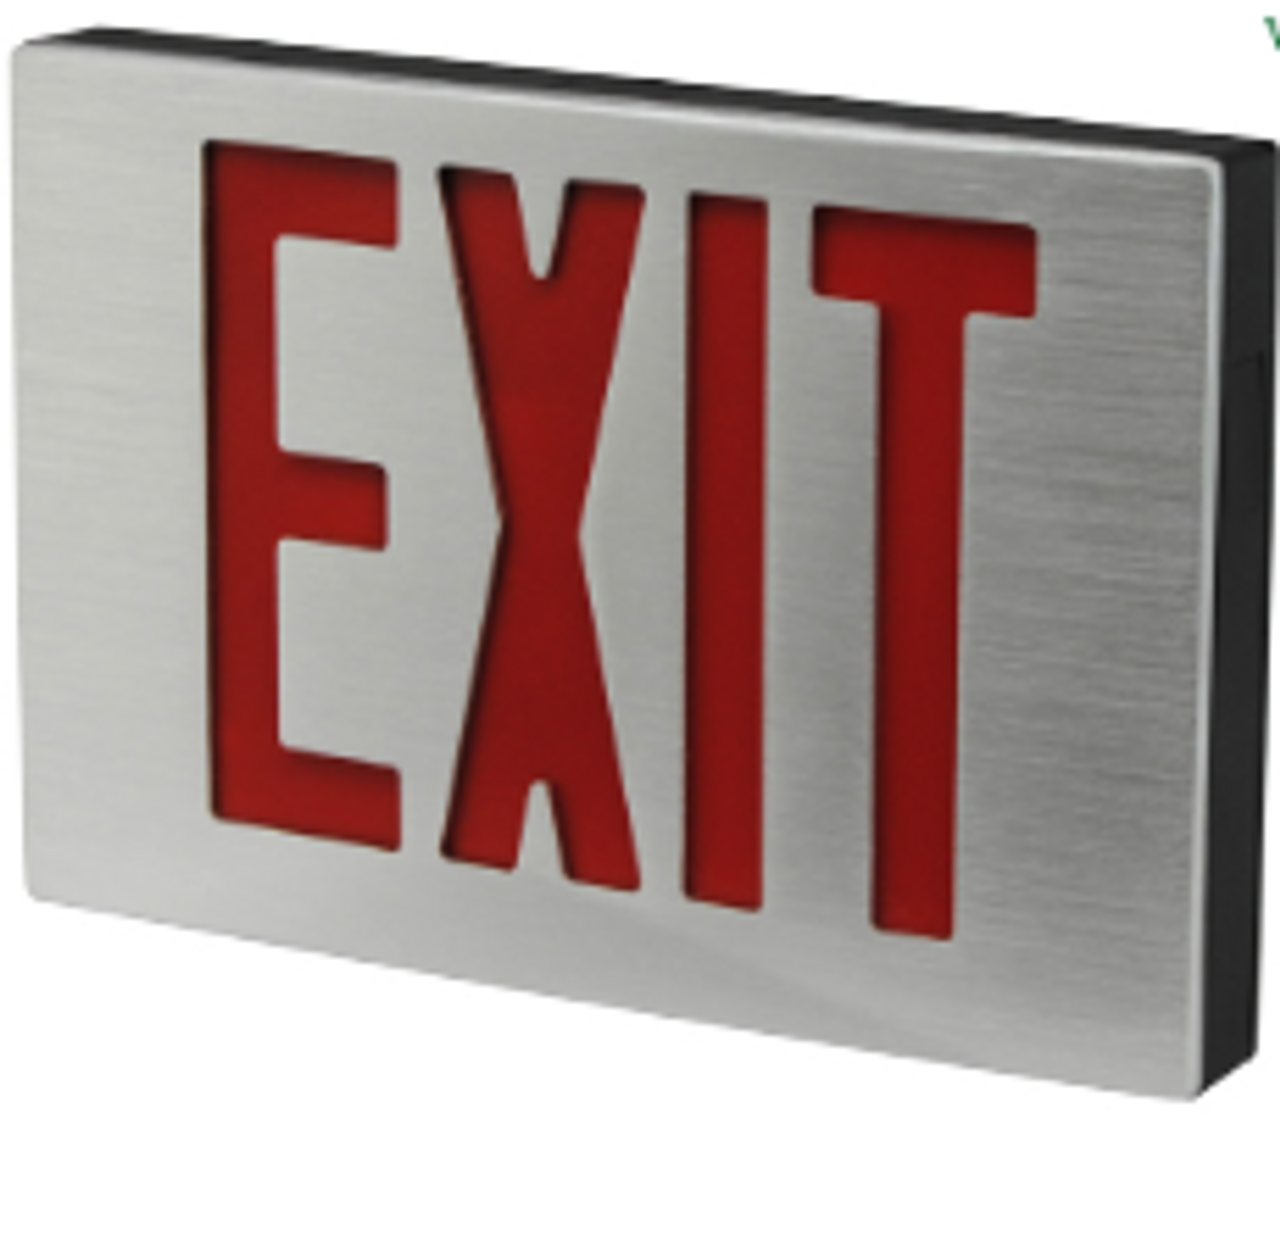 New York City Compliant Die-Cast Aluminum Exit Sign